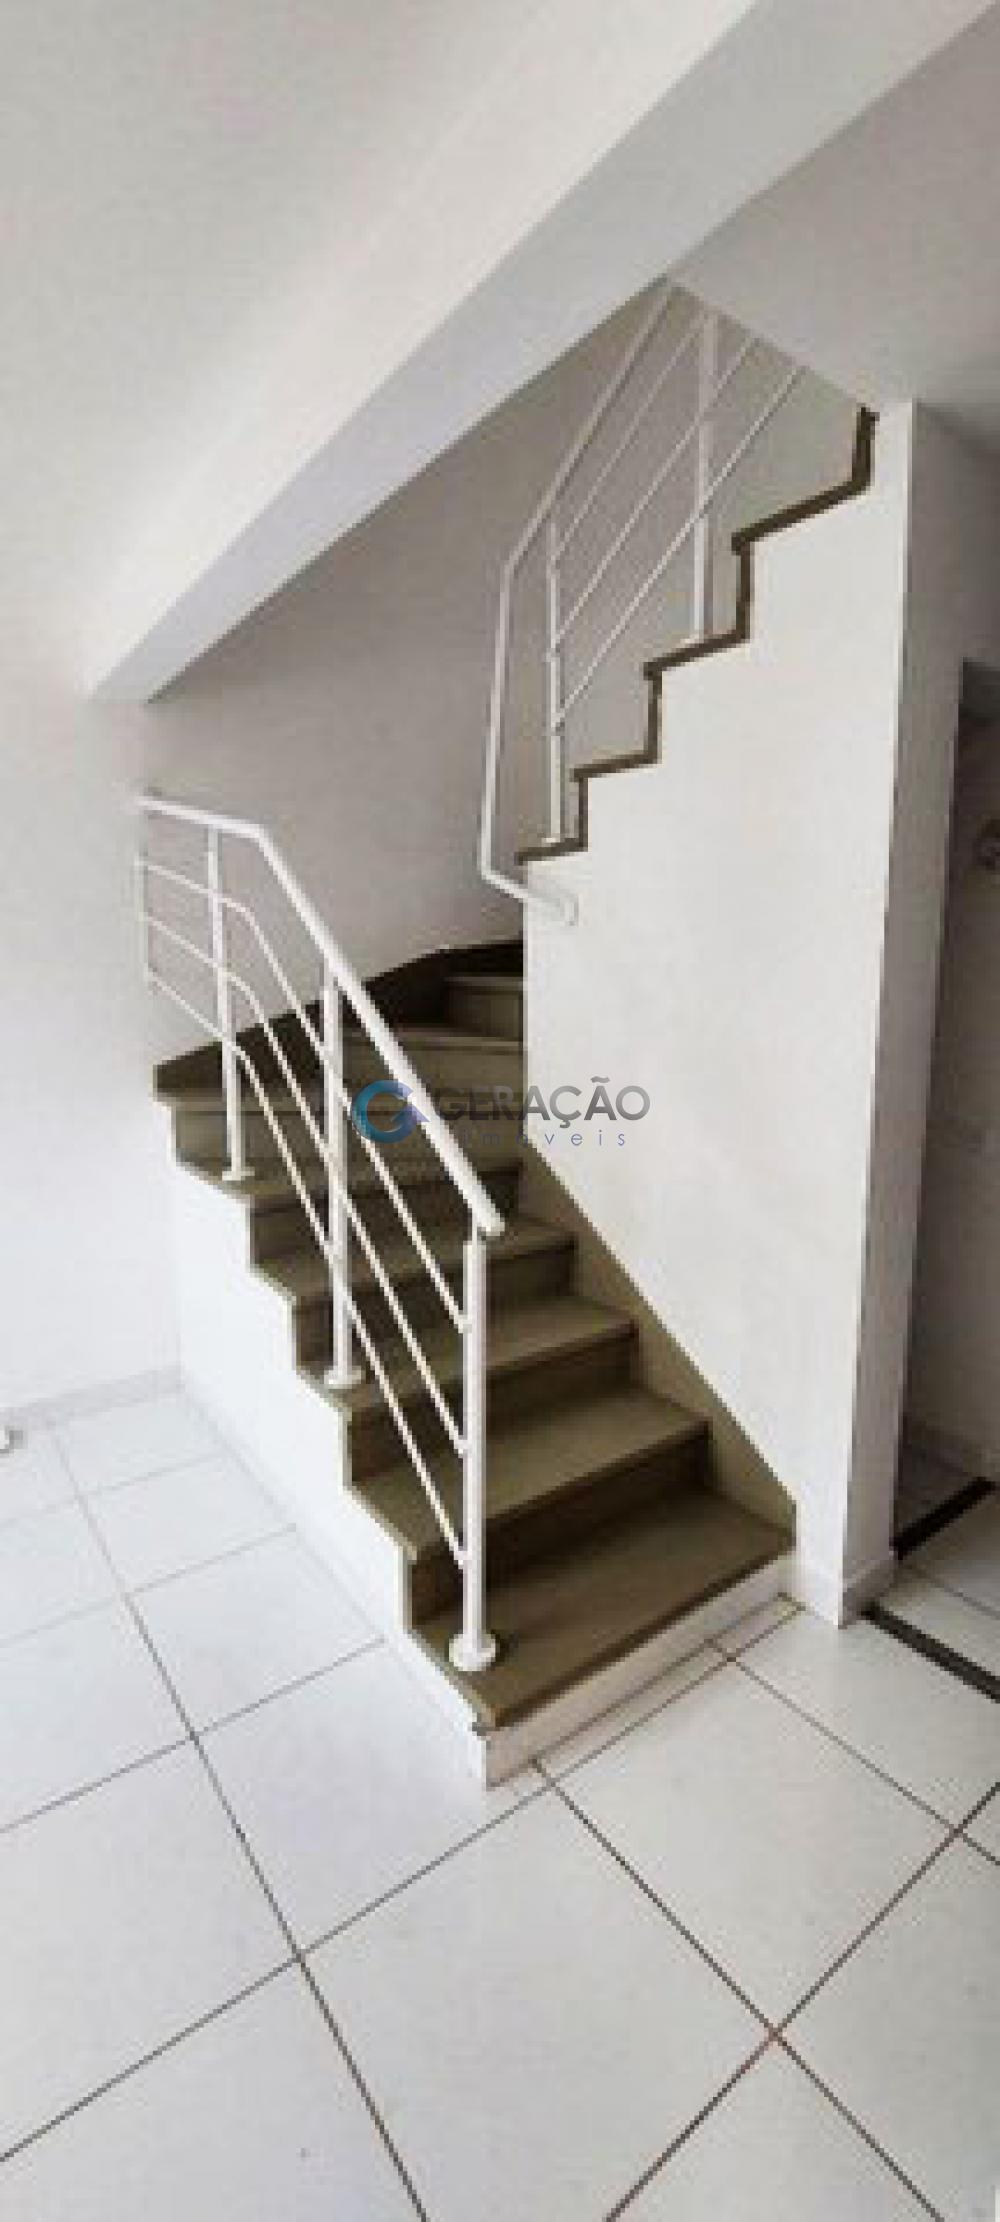 Comprar Apartamento / Padrão em São José dos Campos R$ 320.000,00 - Foto 5